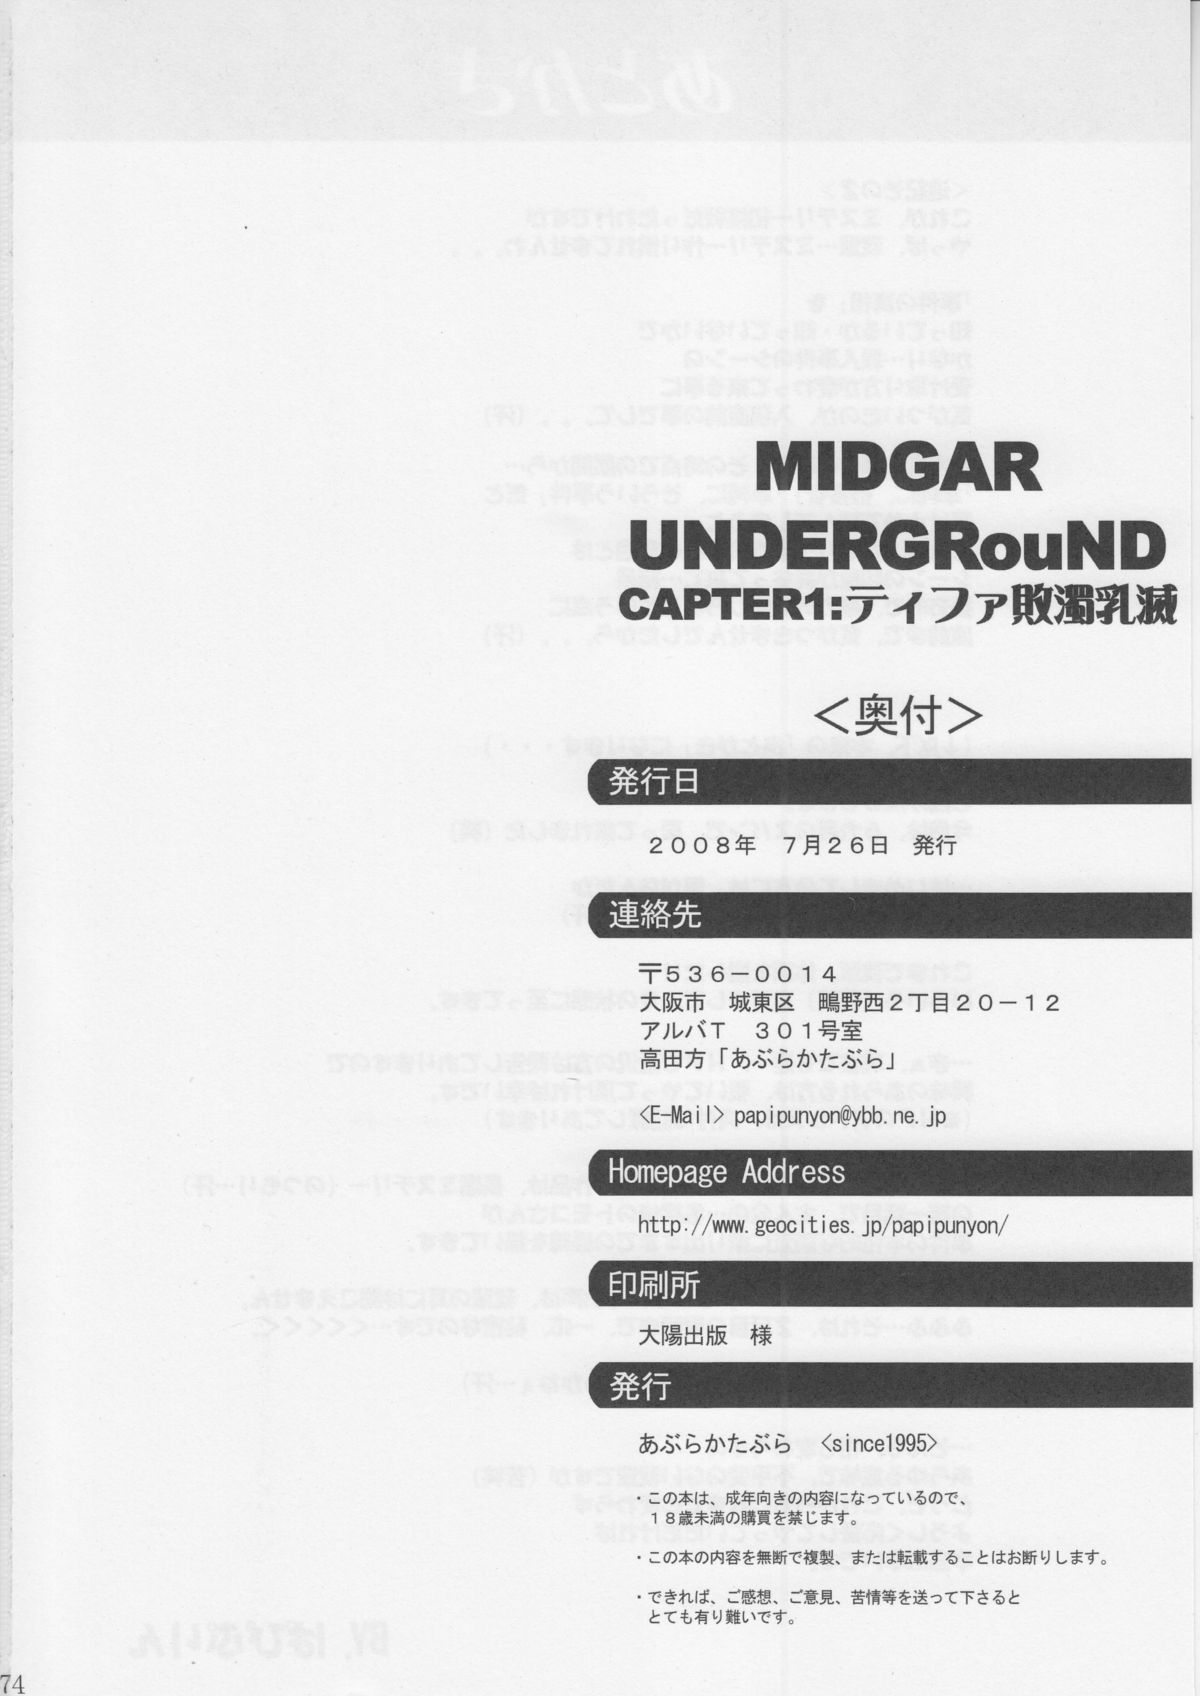 [あぶらかたぶら (ぱぴぷりん)] MIDGAR UNDERGRouND CAPTER1:ティファ敗濁乳滅 (ファイナルファンタジー VII)